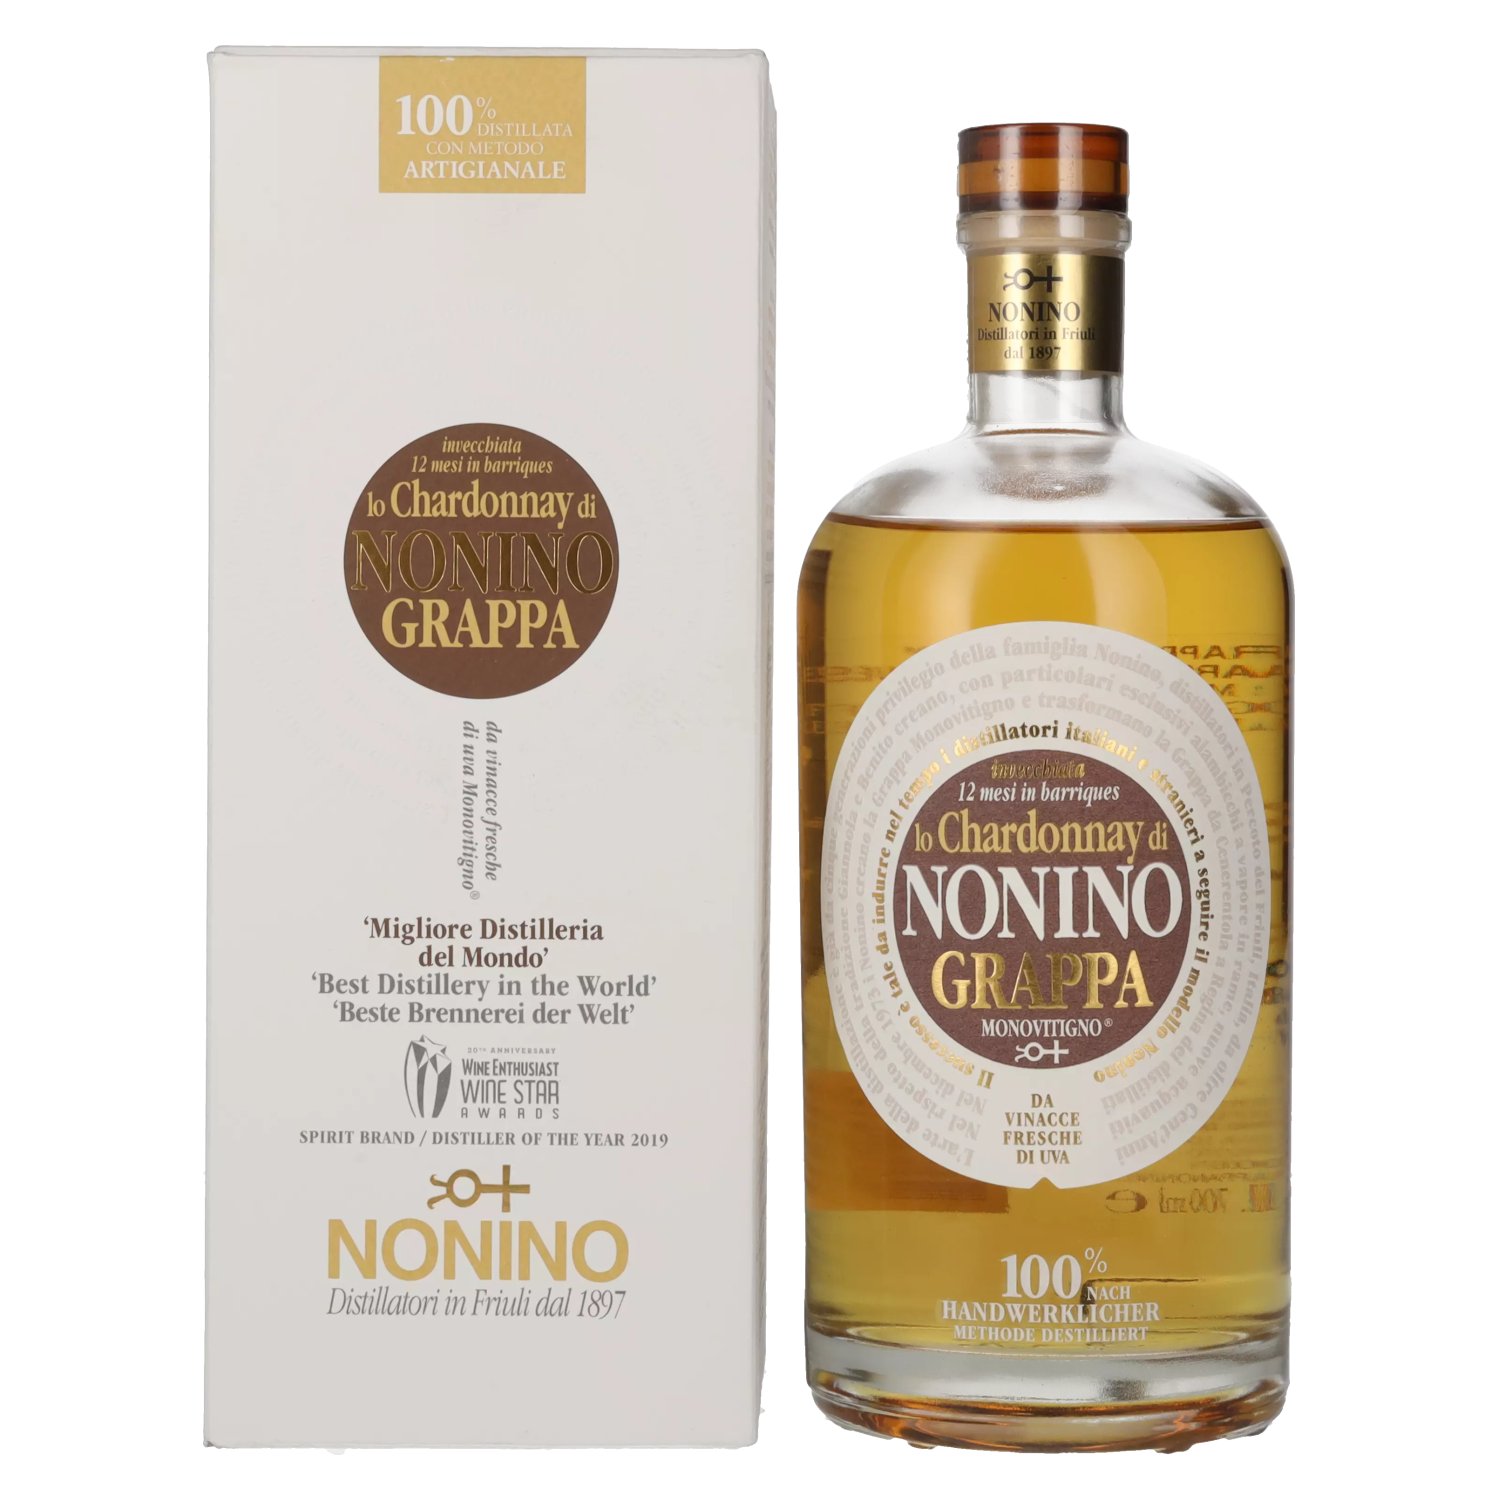 Nonino Grappa Chardonnay in Vol. 41% Barriques in Giftbox 0,7l